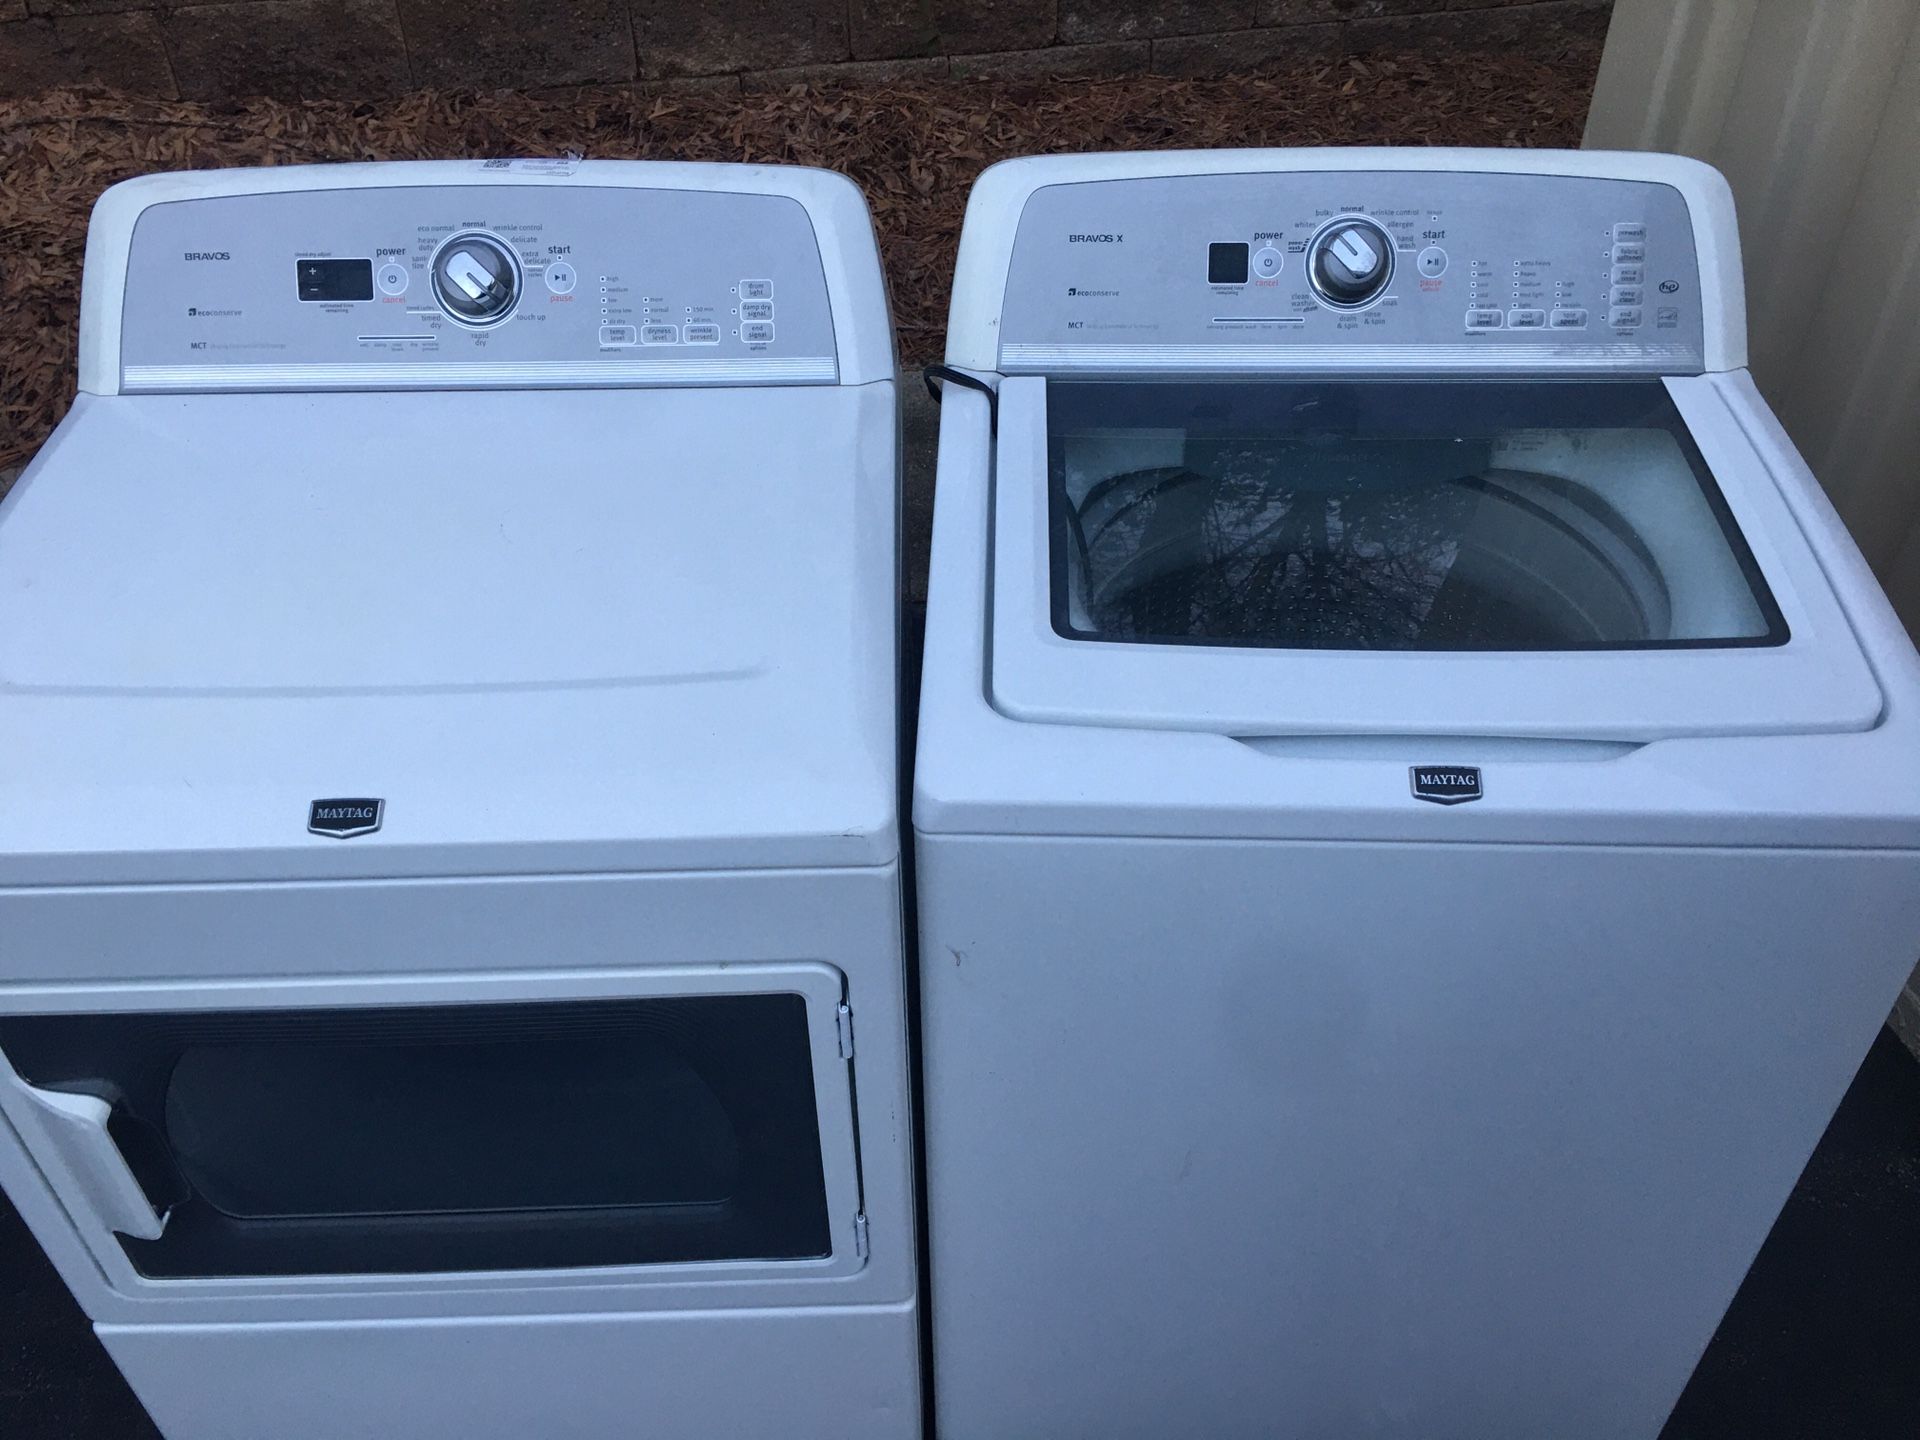 Samsung Washer & dryer set!!